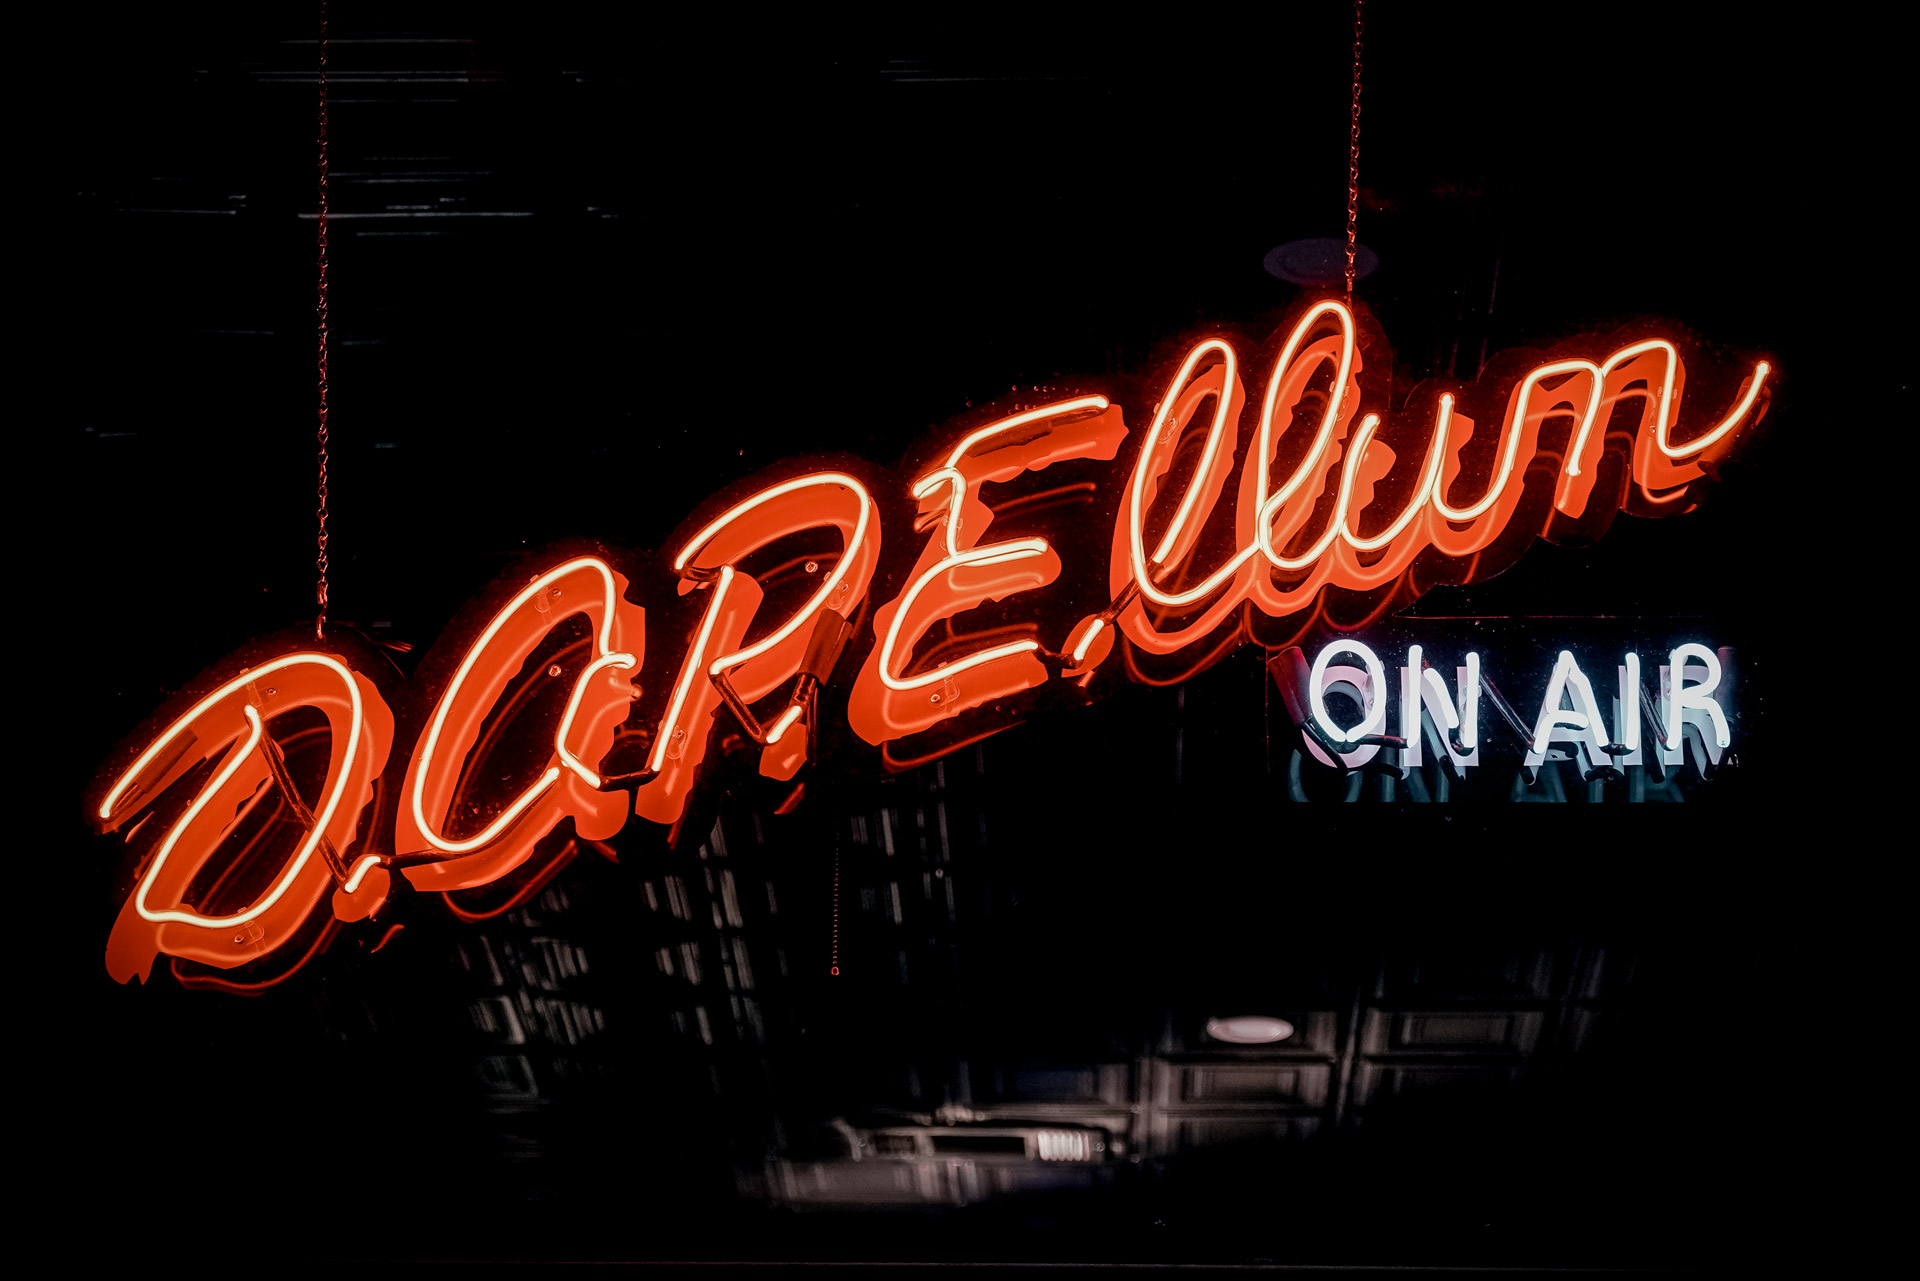 A neon sign that says "D.O.P.E. Ellum on air"